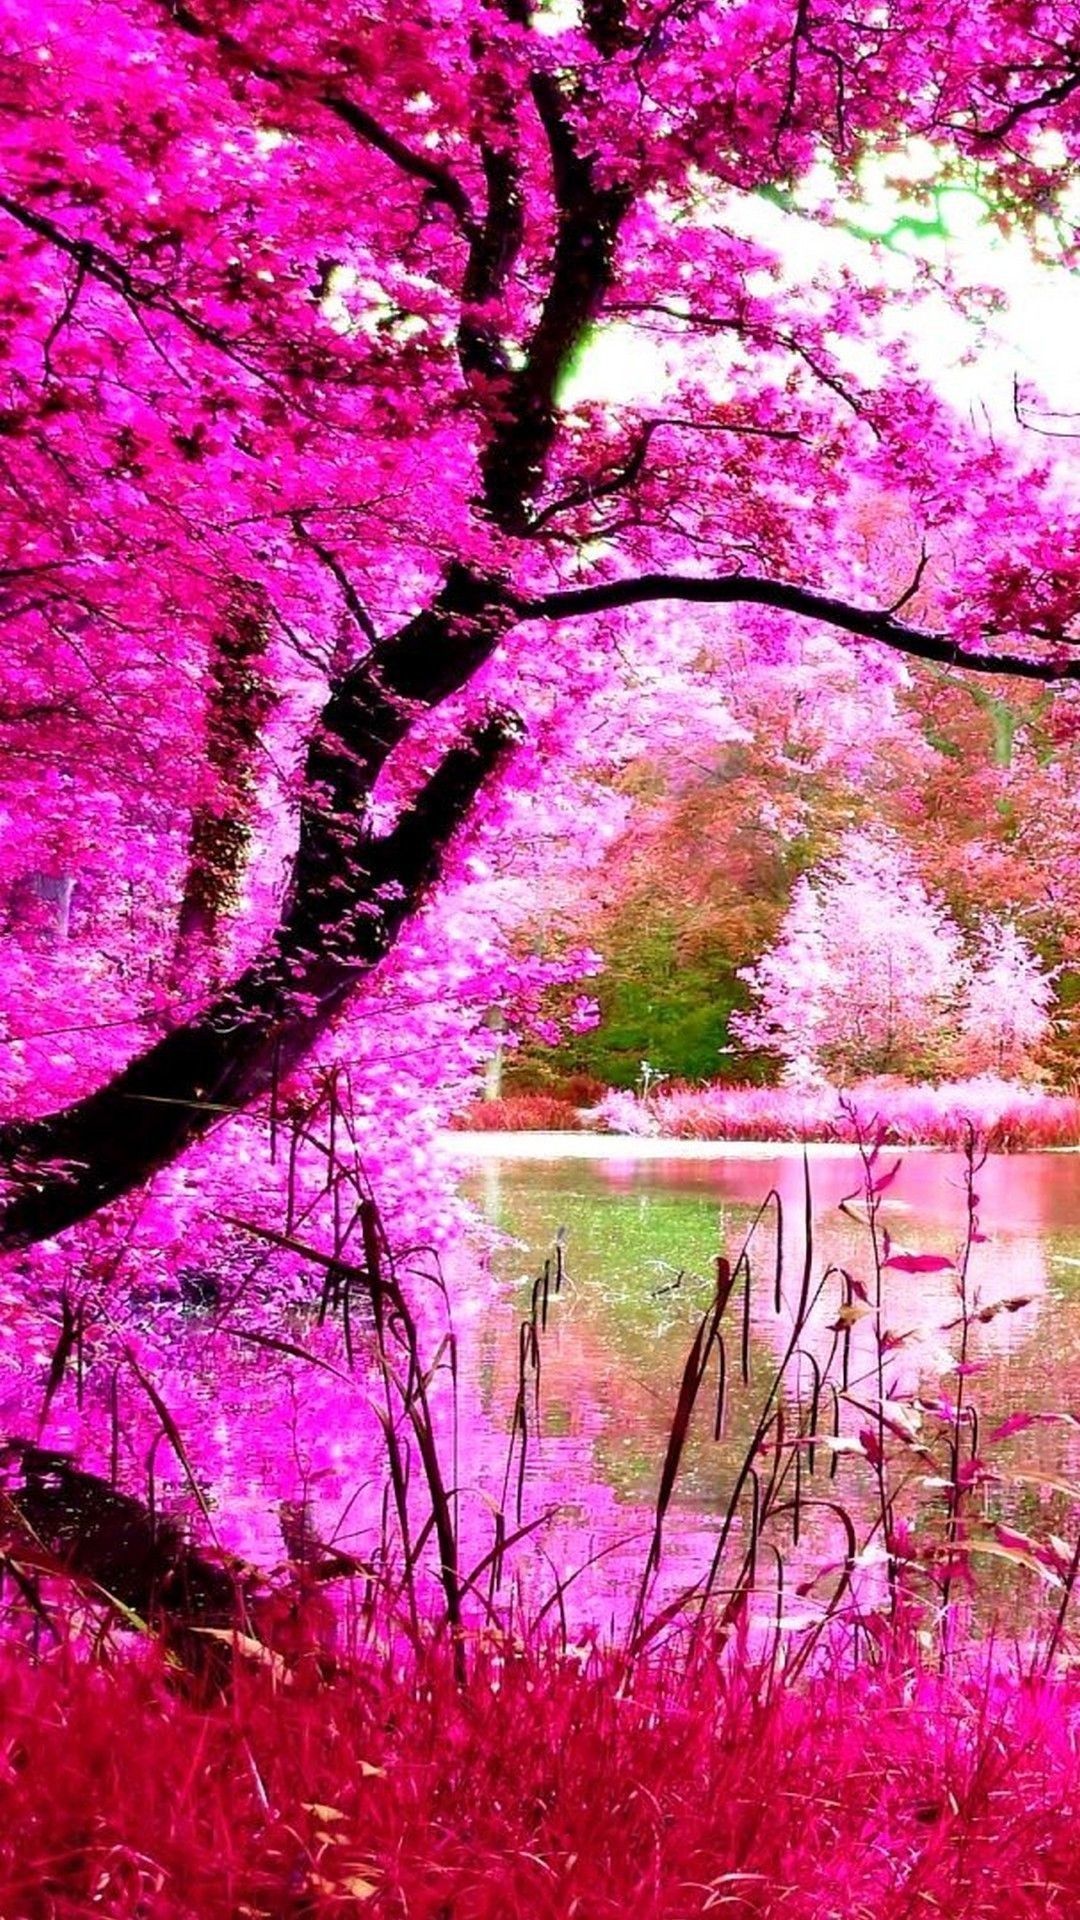 Thưởng thức cảnh tự nhiên trong tông màu hồng nhẹ nhàng này. Hình ảnh này tuyệt vời vì nó cho thấy sức sống và sự tươi mới của thiên nhiên. Hãy để cảm xúc của bạn bay bổng và tâm trí thư giãn bằng cách ngắm nhìn những hình ảnh đẹp này.